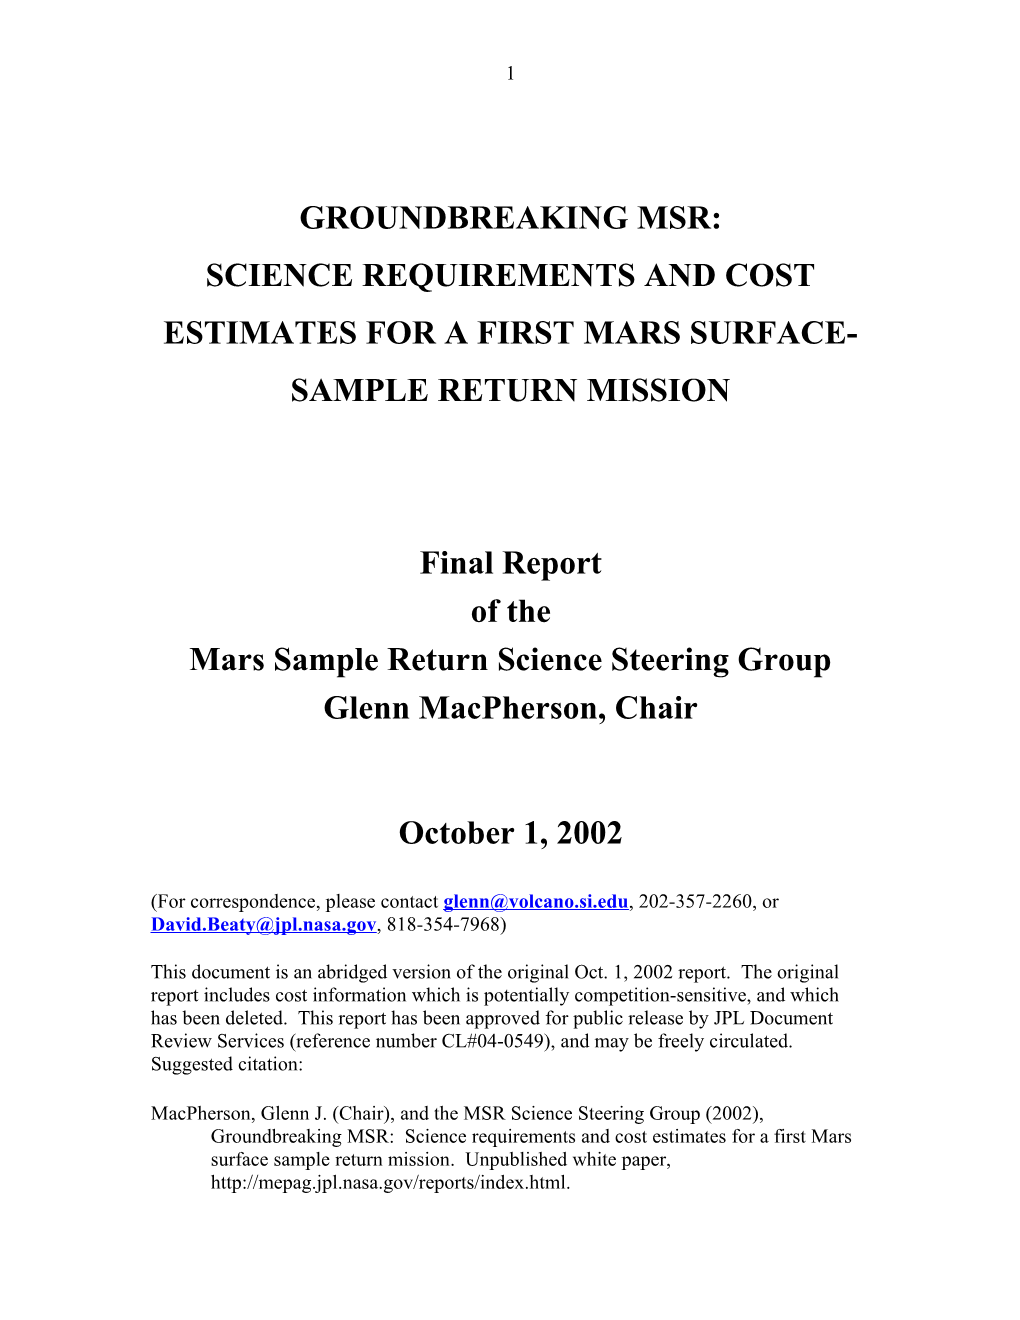 MSR SSG Final Report Outline